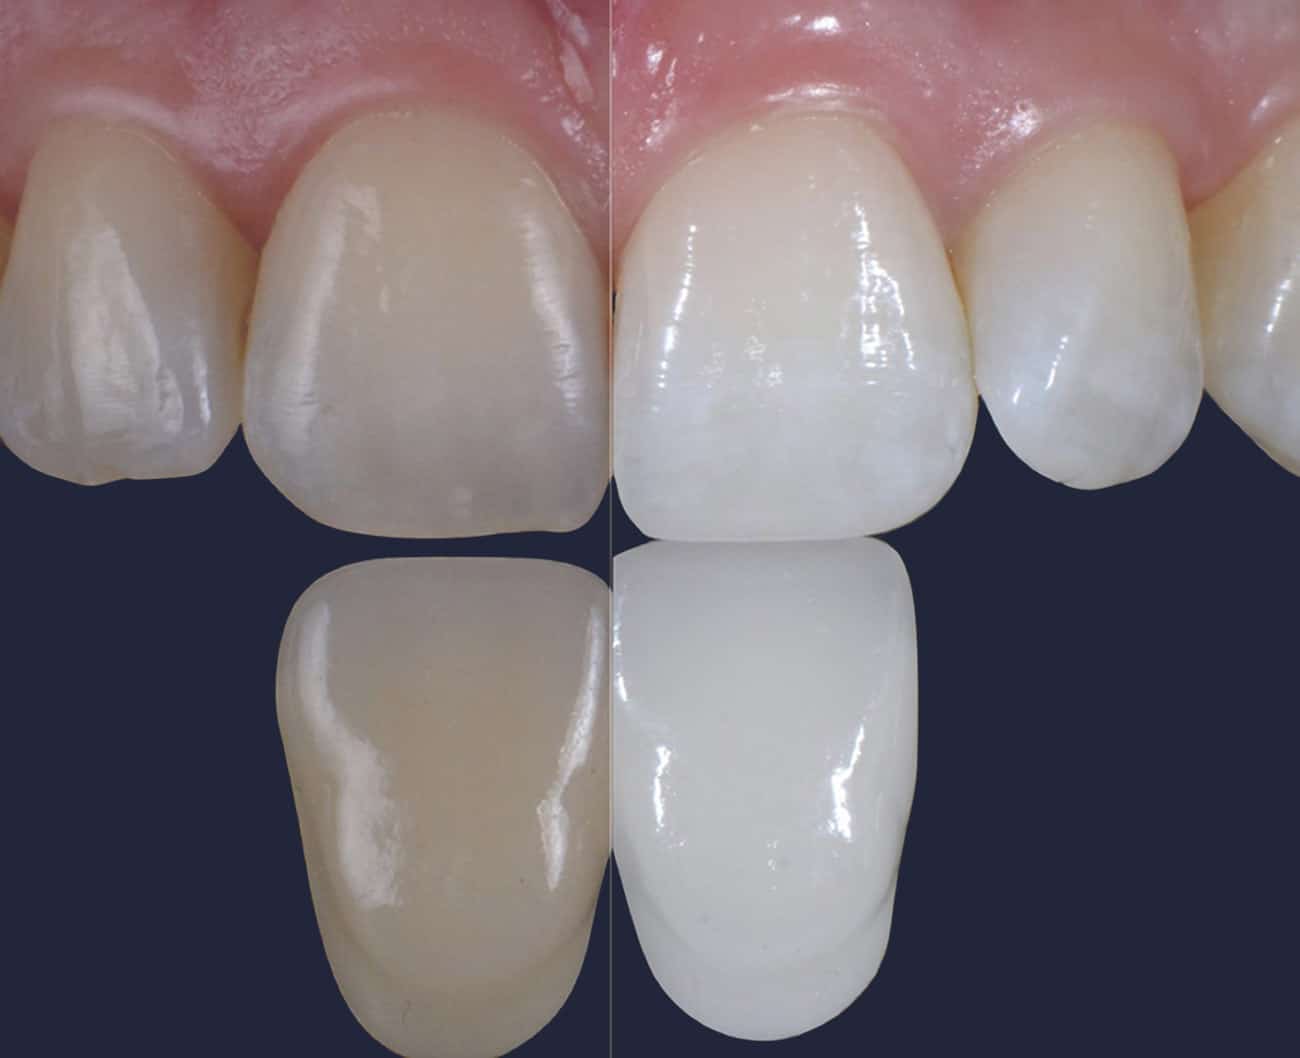 Dentus perfectus - teeth whitening Beyond